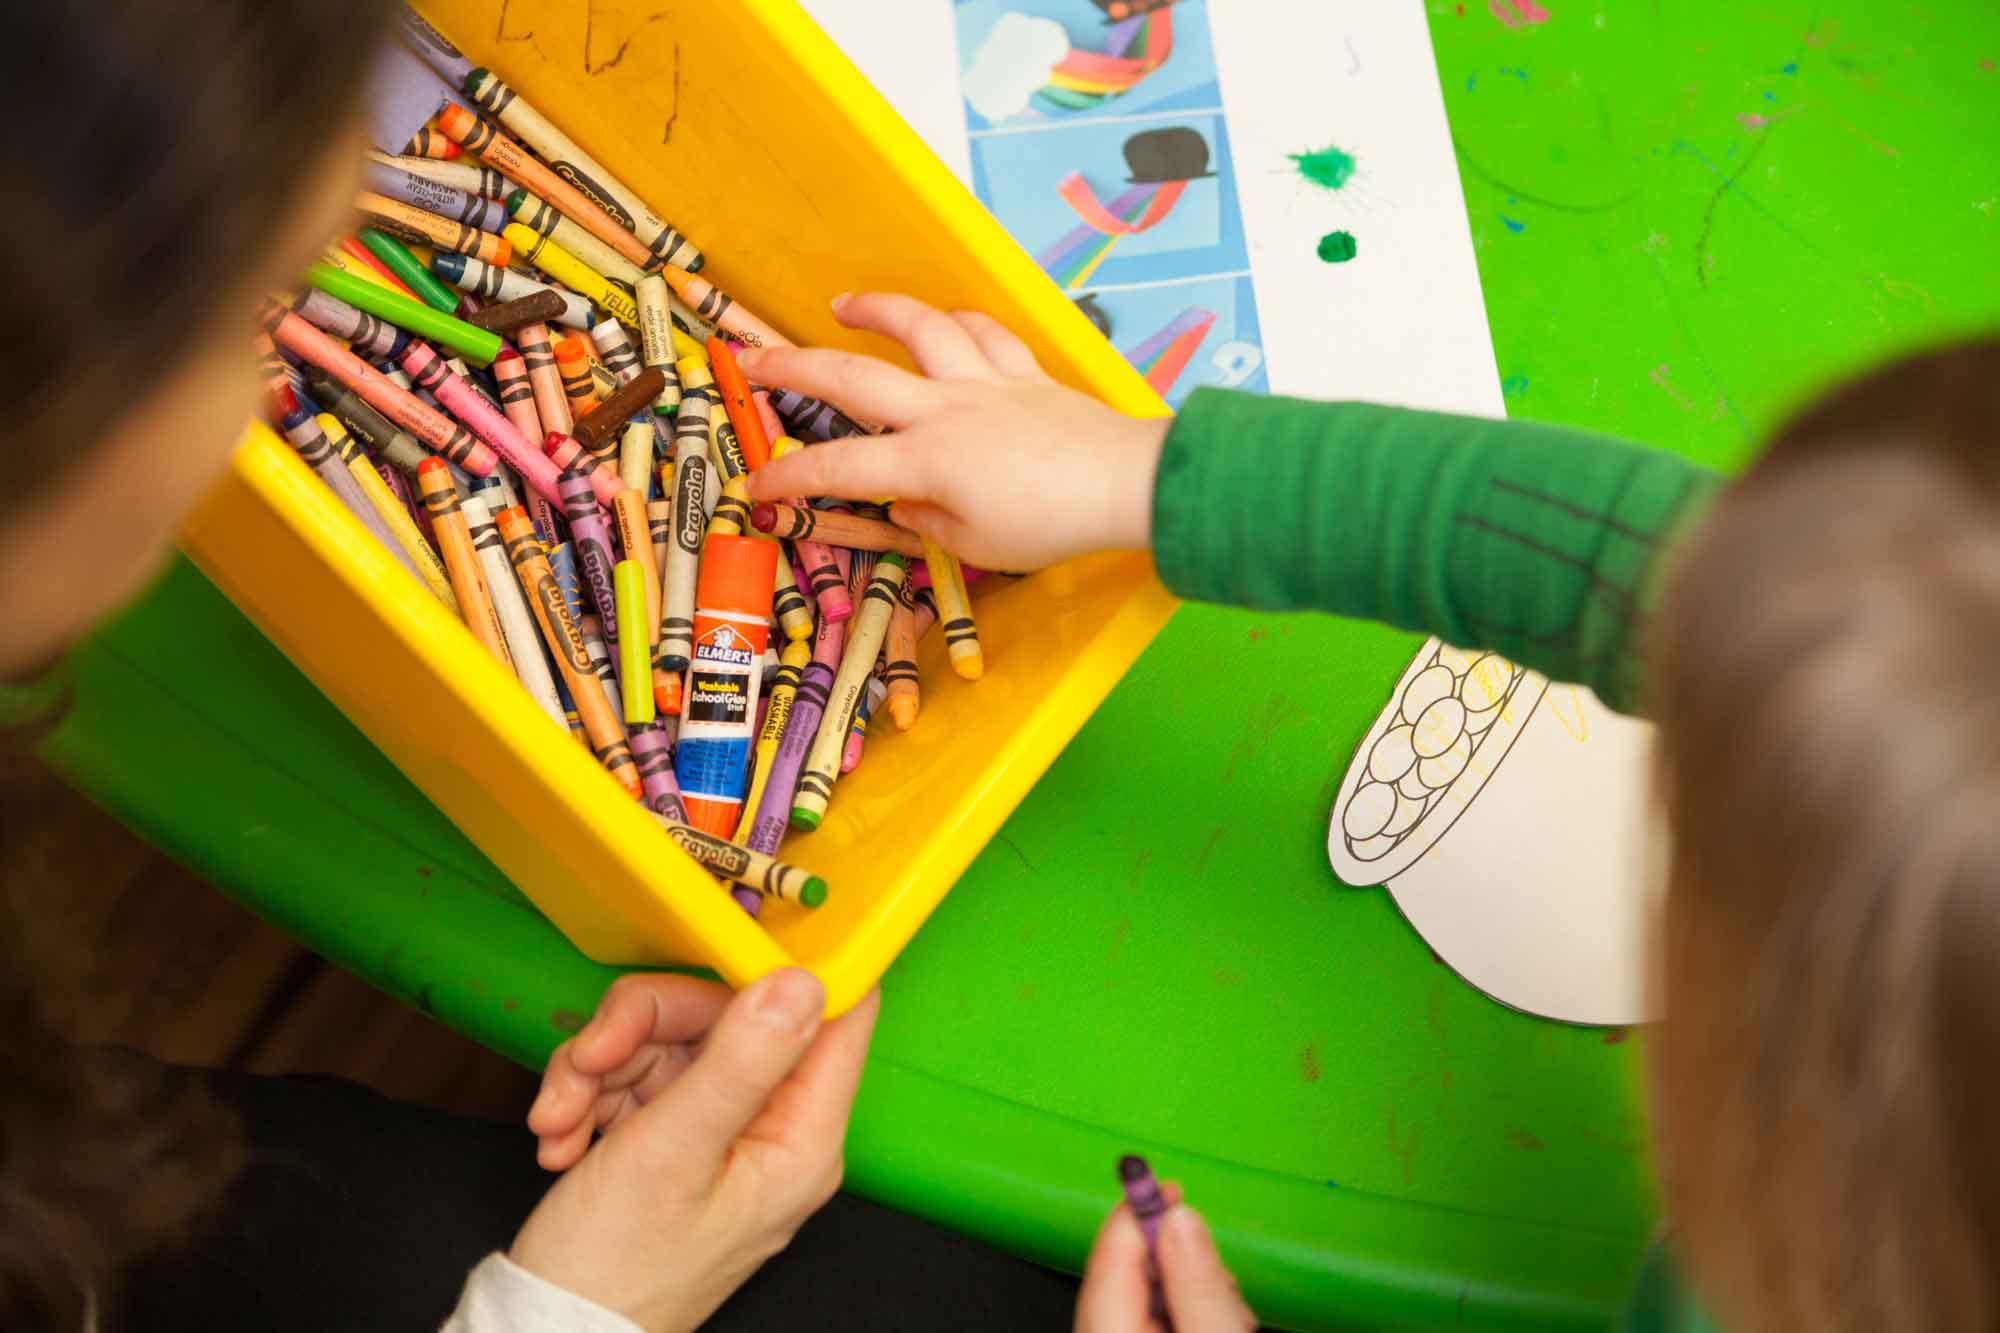 Child grabbing crayons